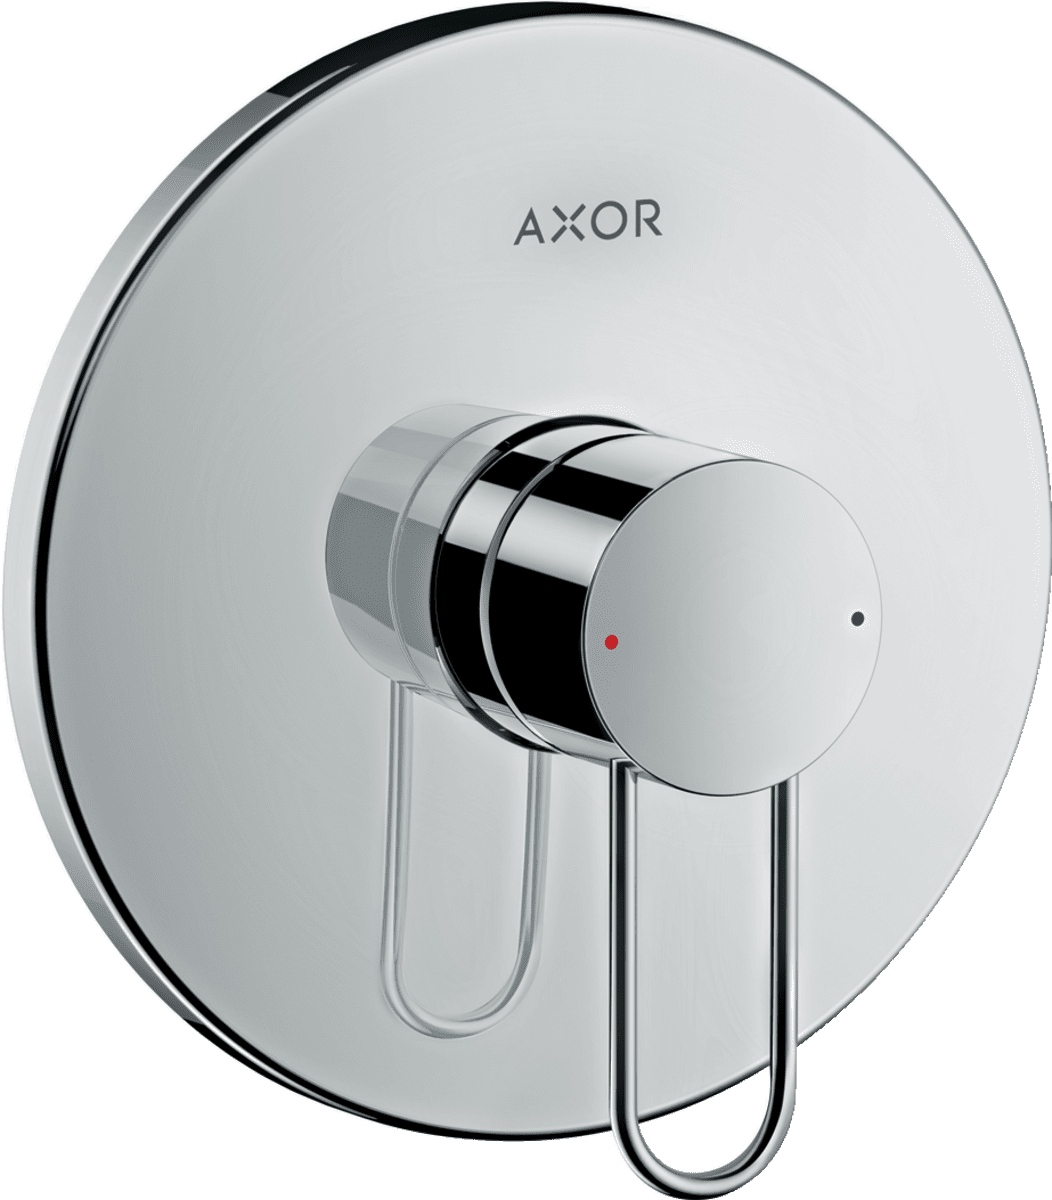 εικόνα του HANSGROHE AXOR Uno Single lever shower mixer for concealed installation with loop handle #38626330 - Polished Black Chrome